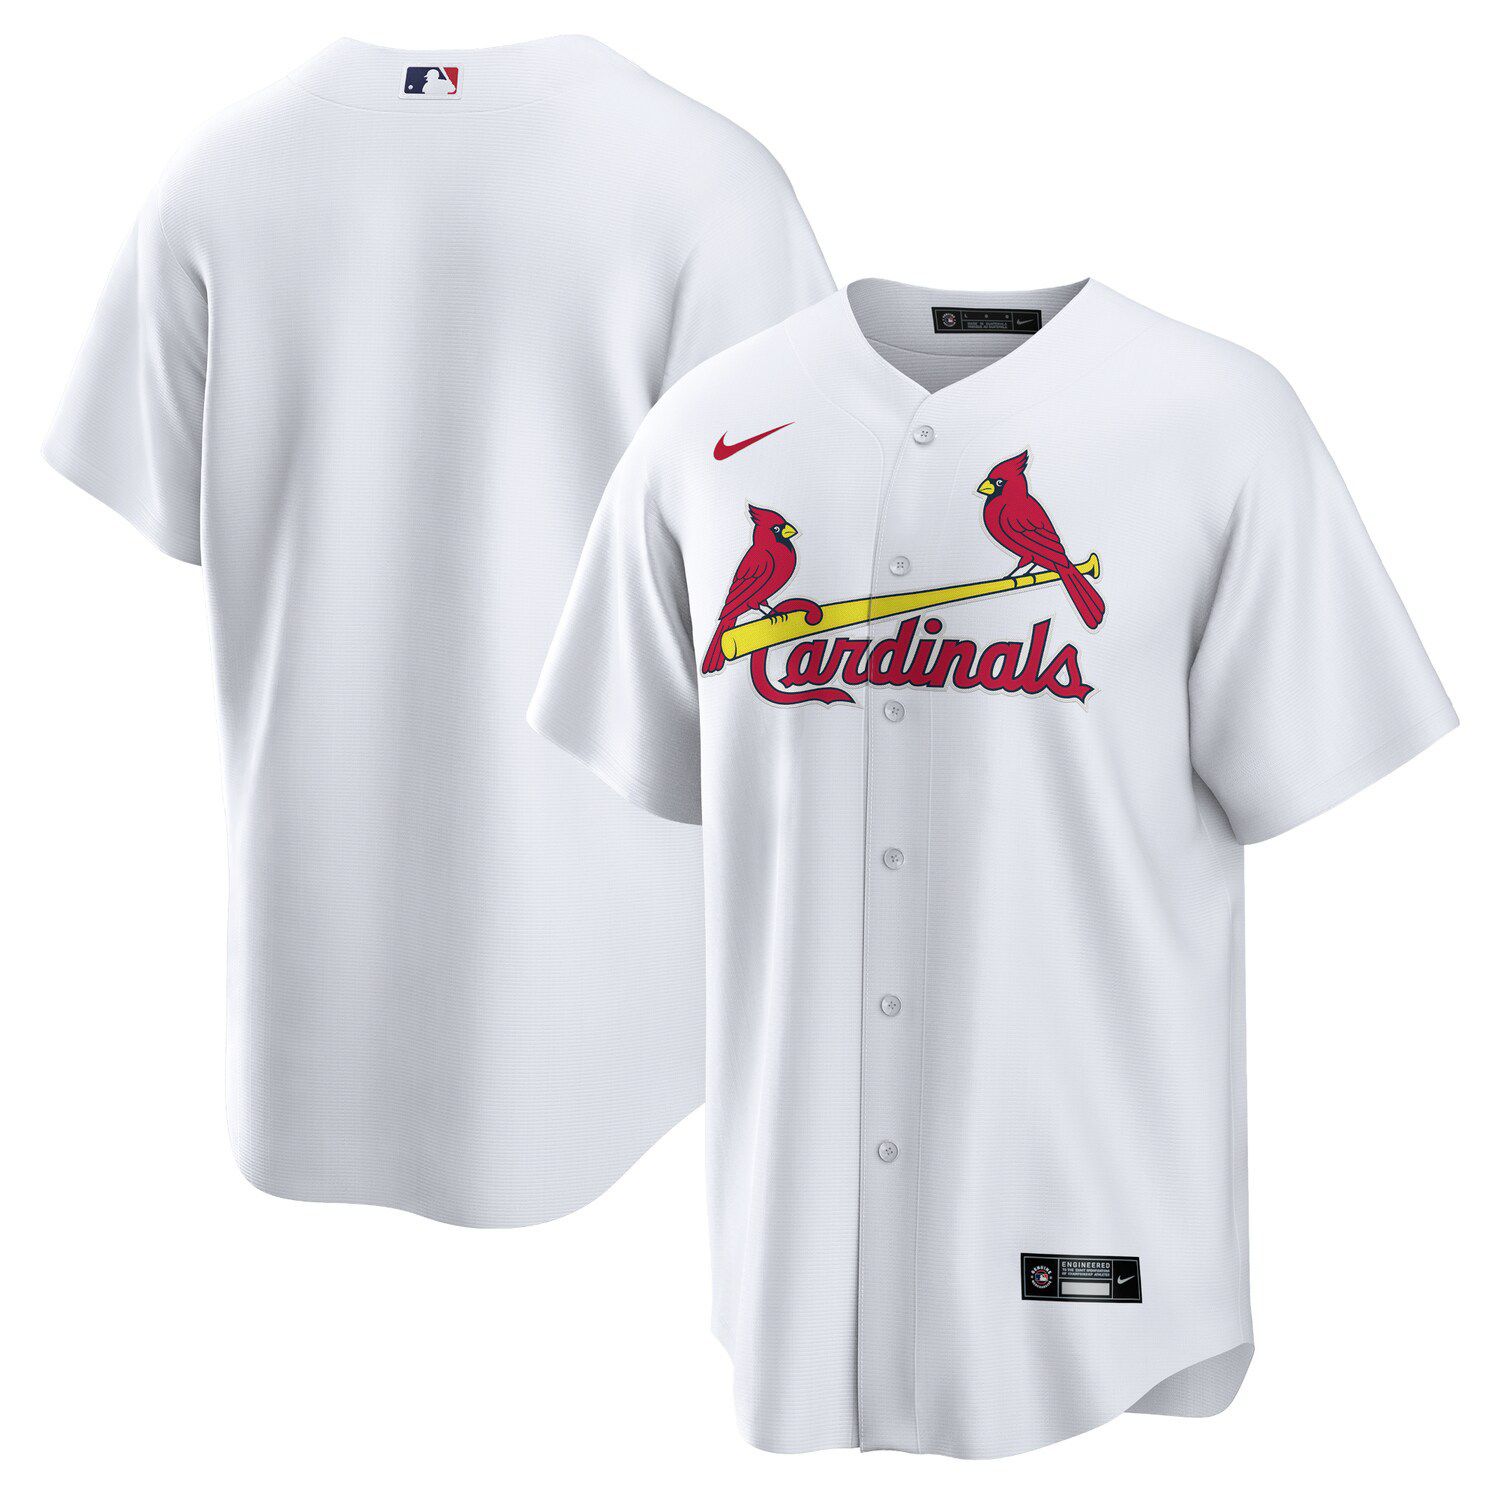 cardinals shirts